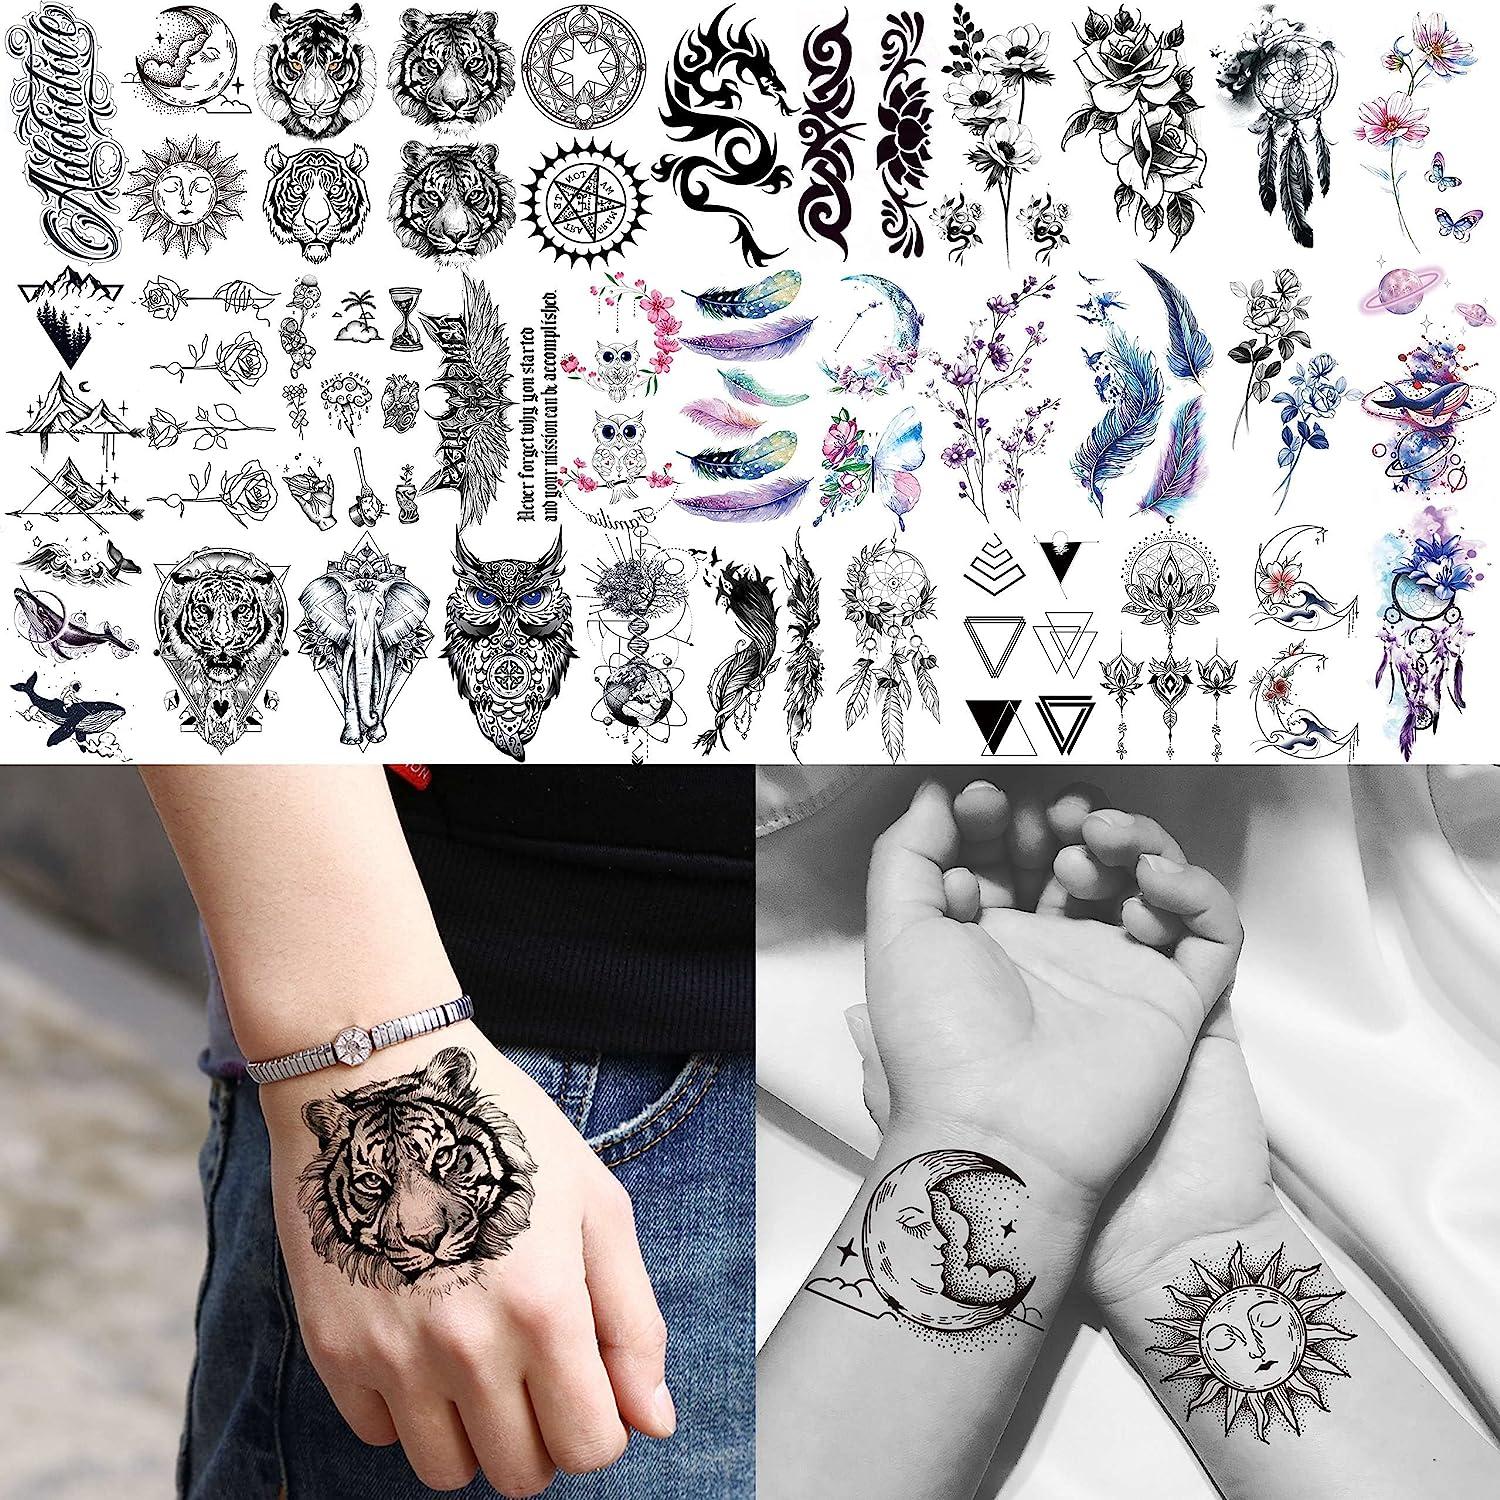 Pin by Marcos Tatuador on TattoFeminine tattoosWrap around wrist  tattoosCuff tattoo | Wrap around wrist tattoos, Cuff tattoo, Feminine  tattoos